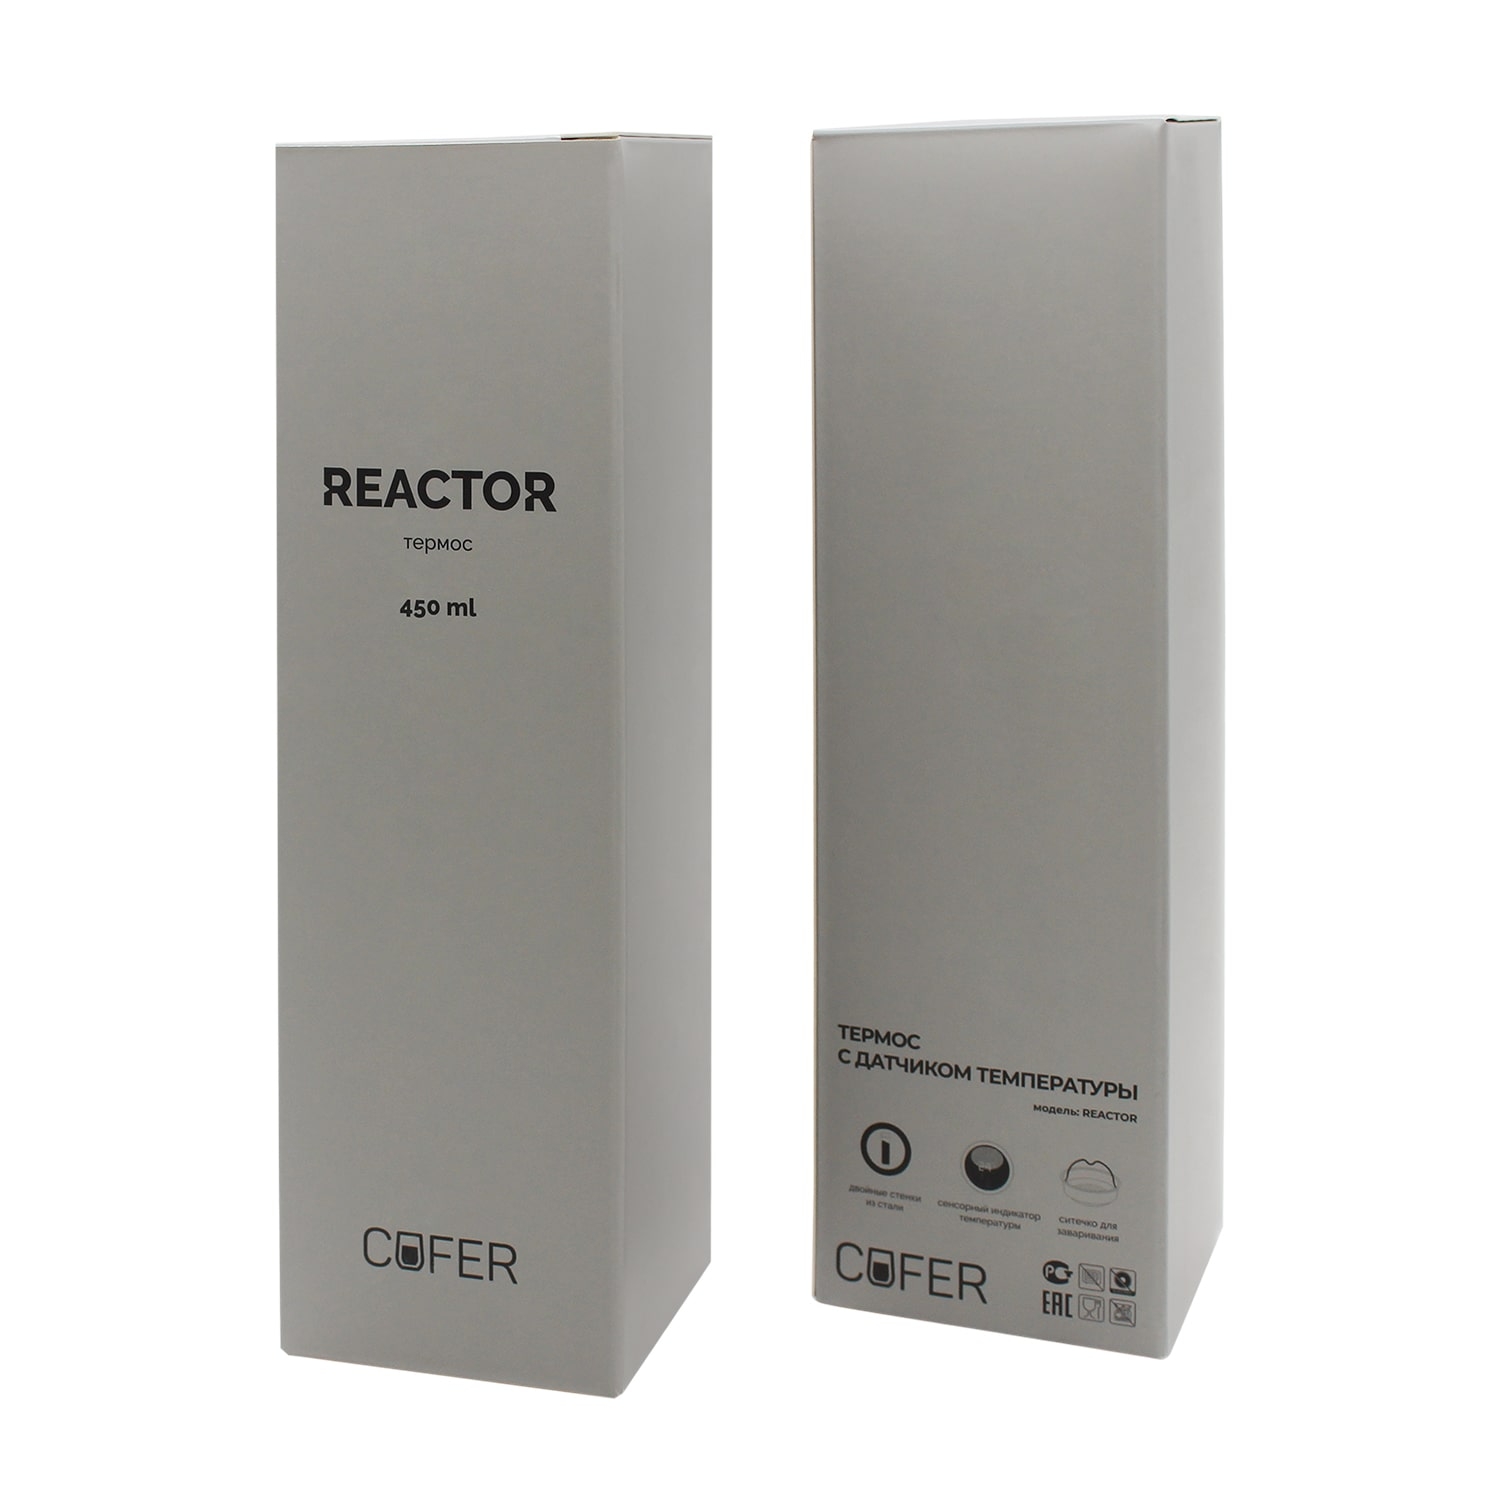 Термос Reactor софт-тач с датчиком температуры (красный), красный, металл, soft touch